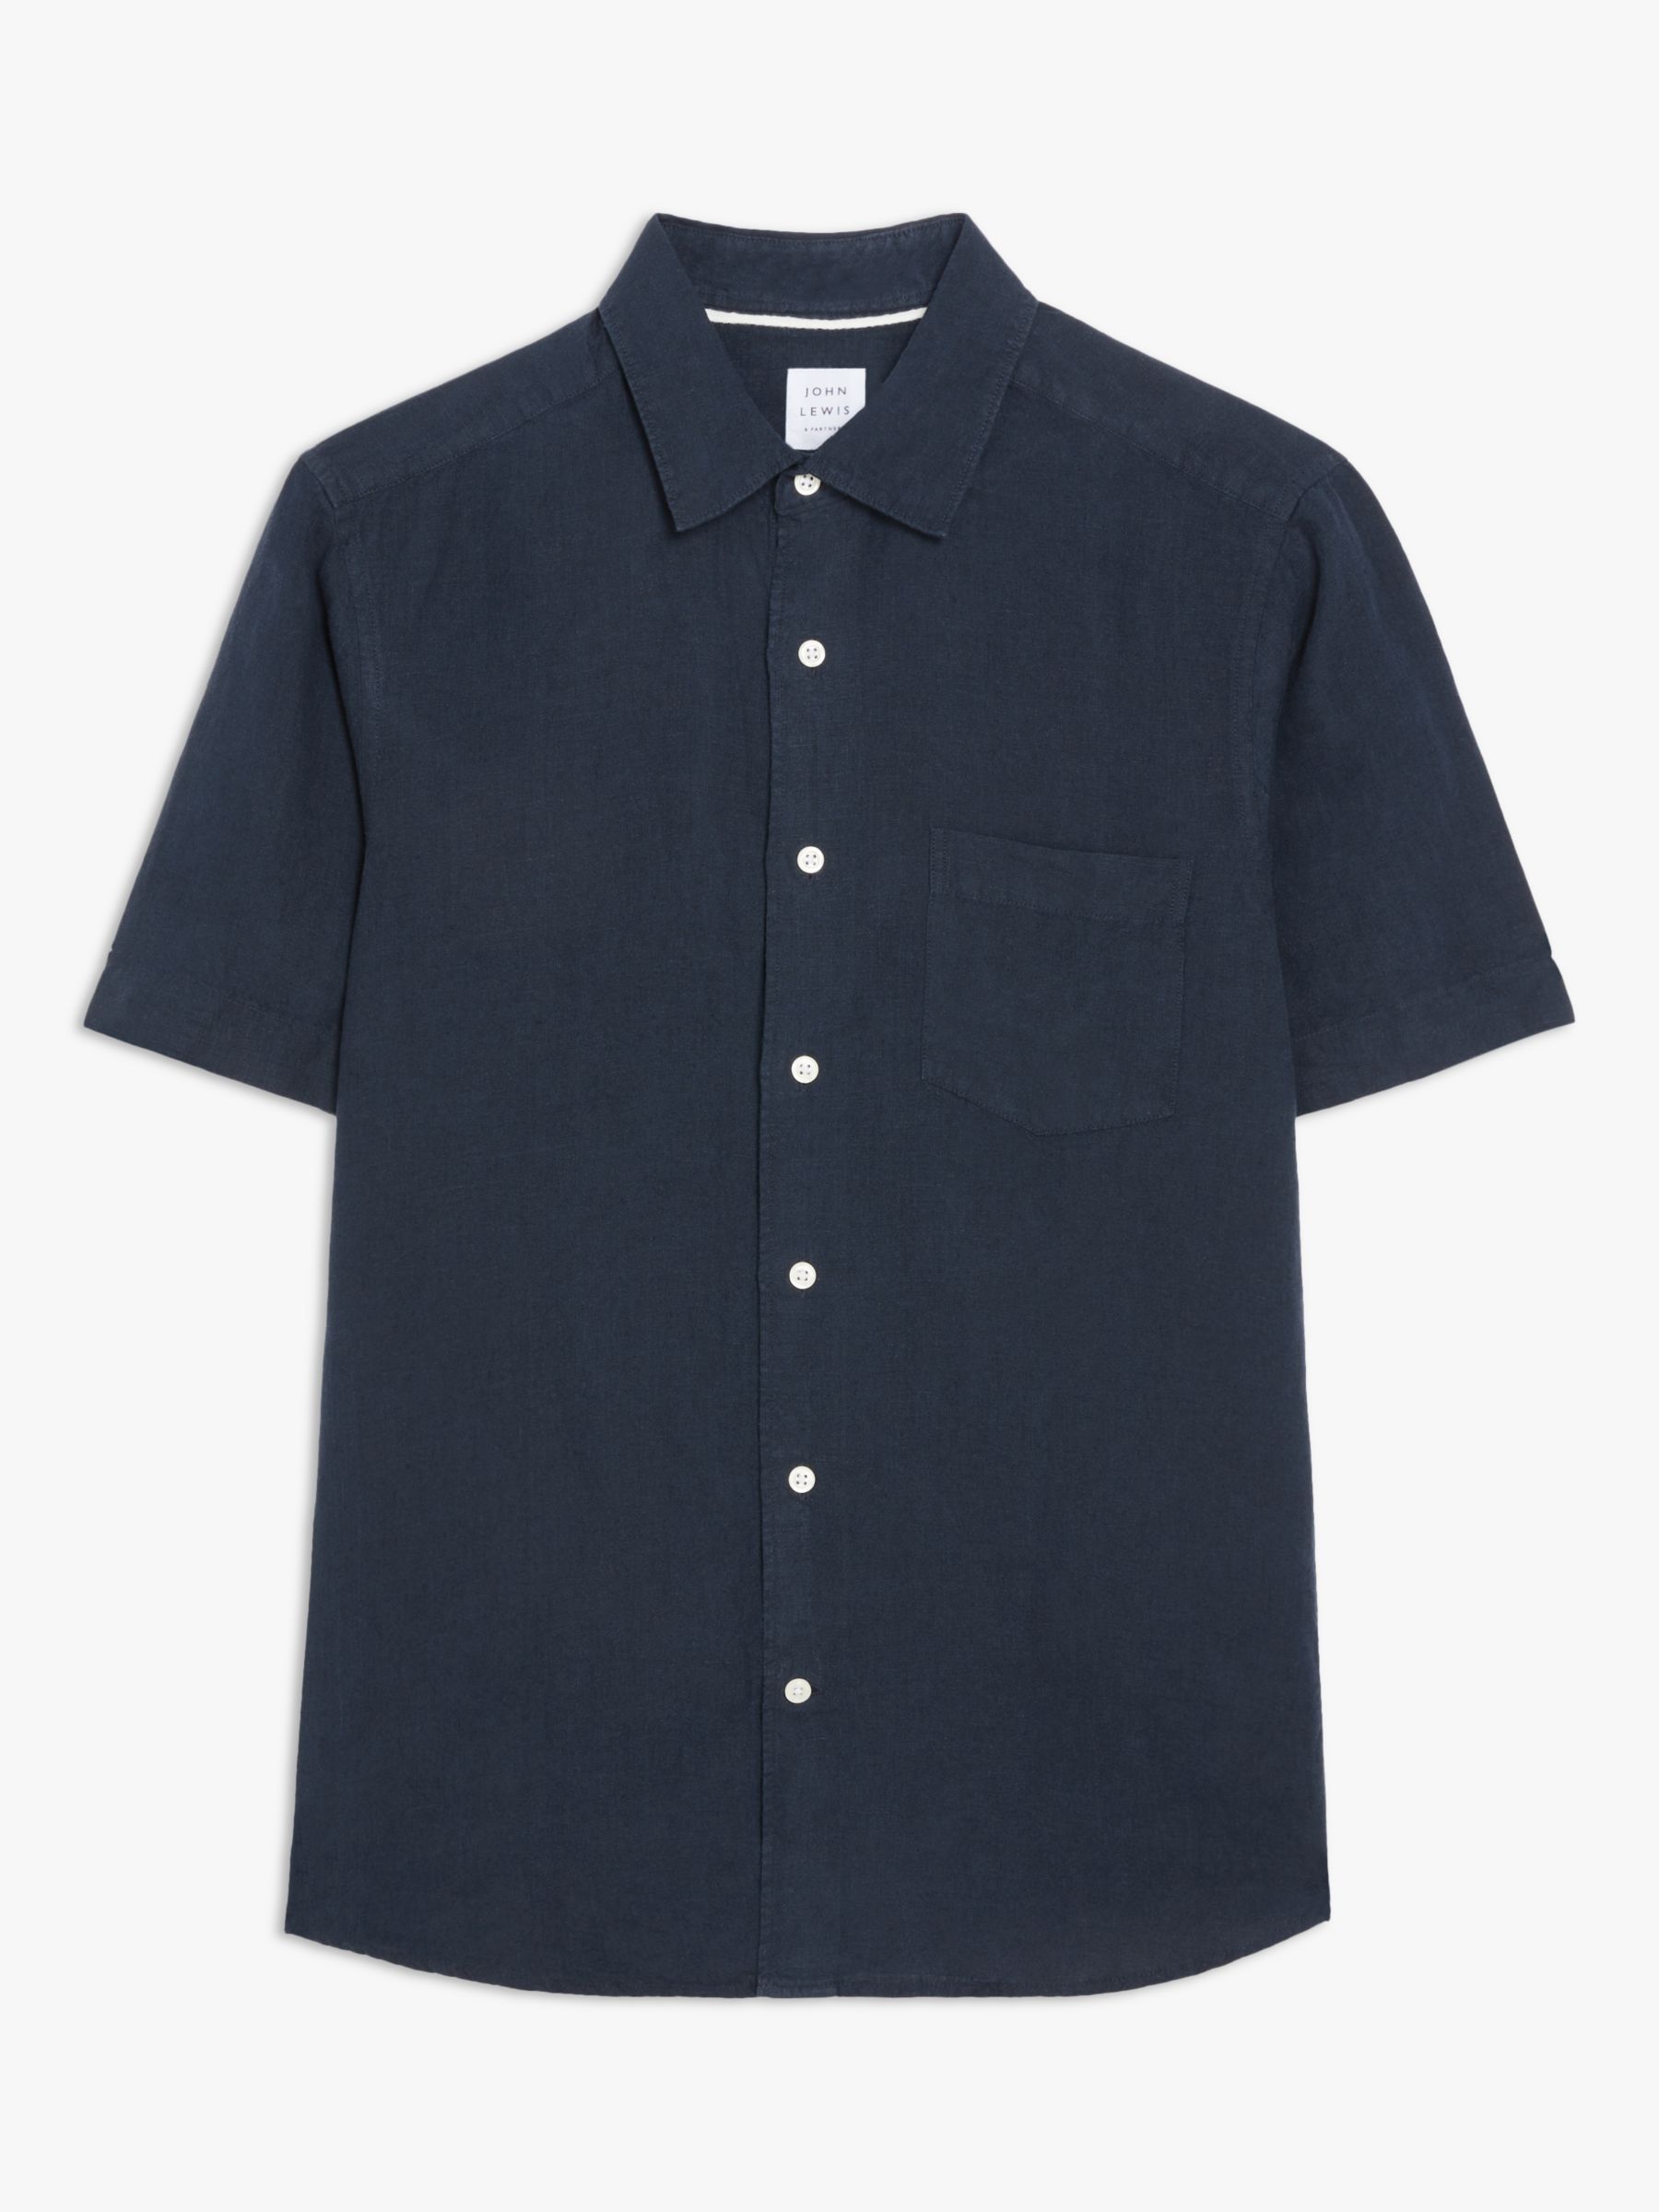 John Lewis Linen Regular Fit Shirt, Navy, S